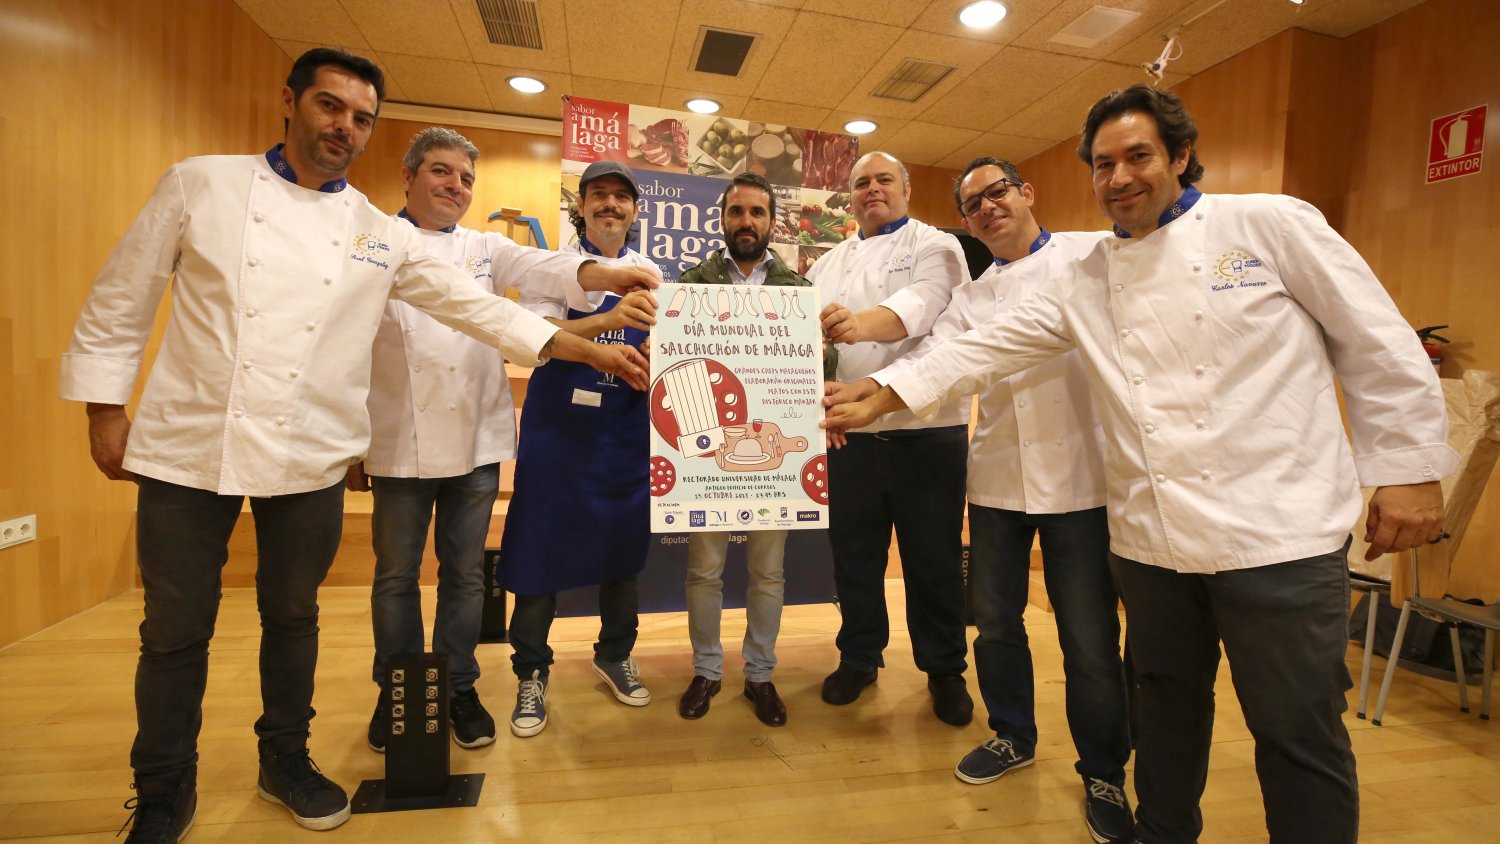 La Asamblea Euro Toques 2018 reunirá en Málaga a más de un centenar de cocineros de todo el país